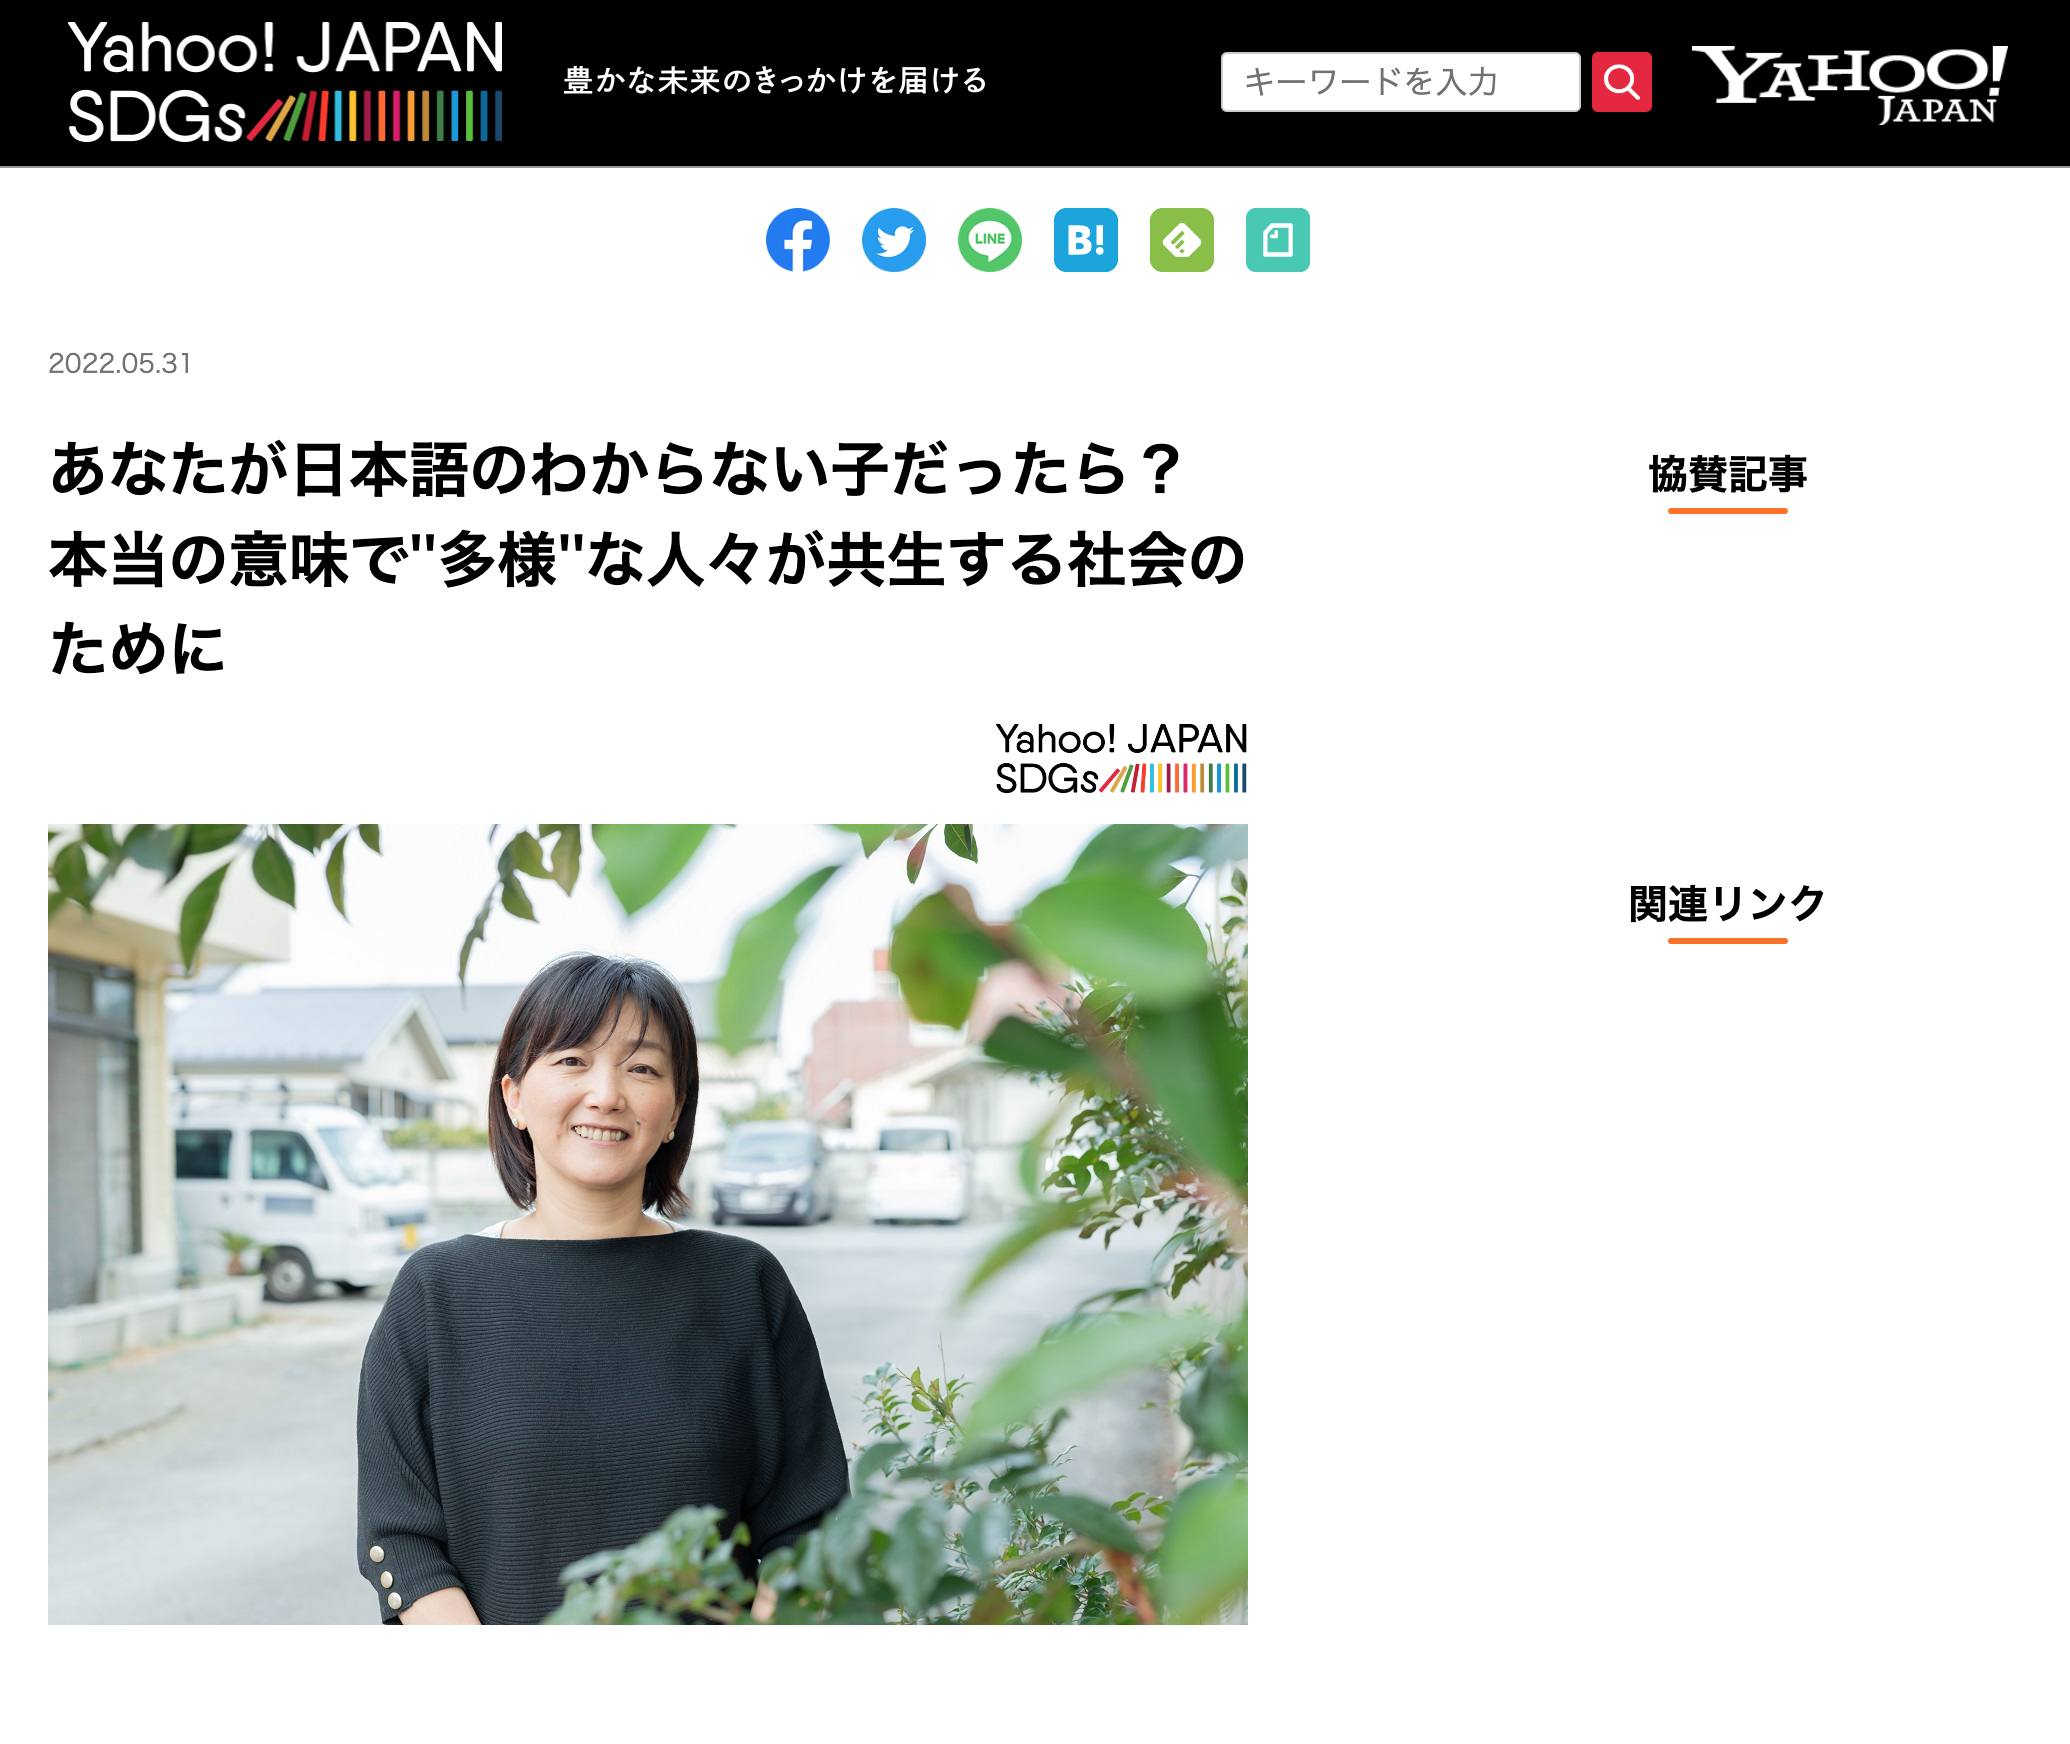 【Yahoo! JAPAN SDGs】あなたが日本語のわからない子だったら？本当の意味で''多様''な人々が共生する社会のために